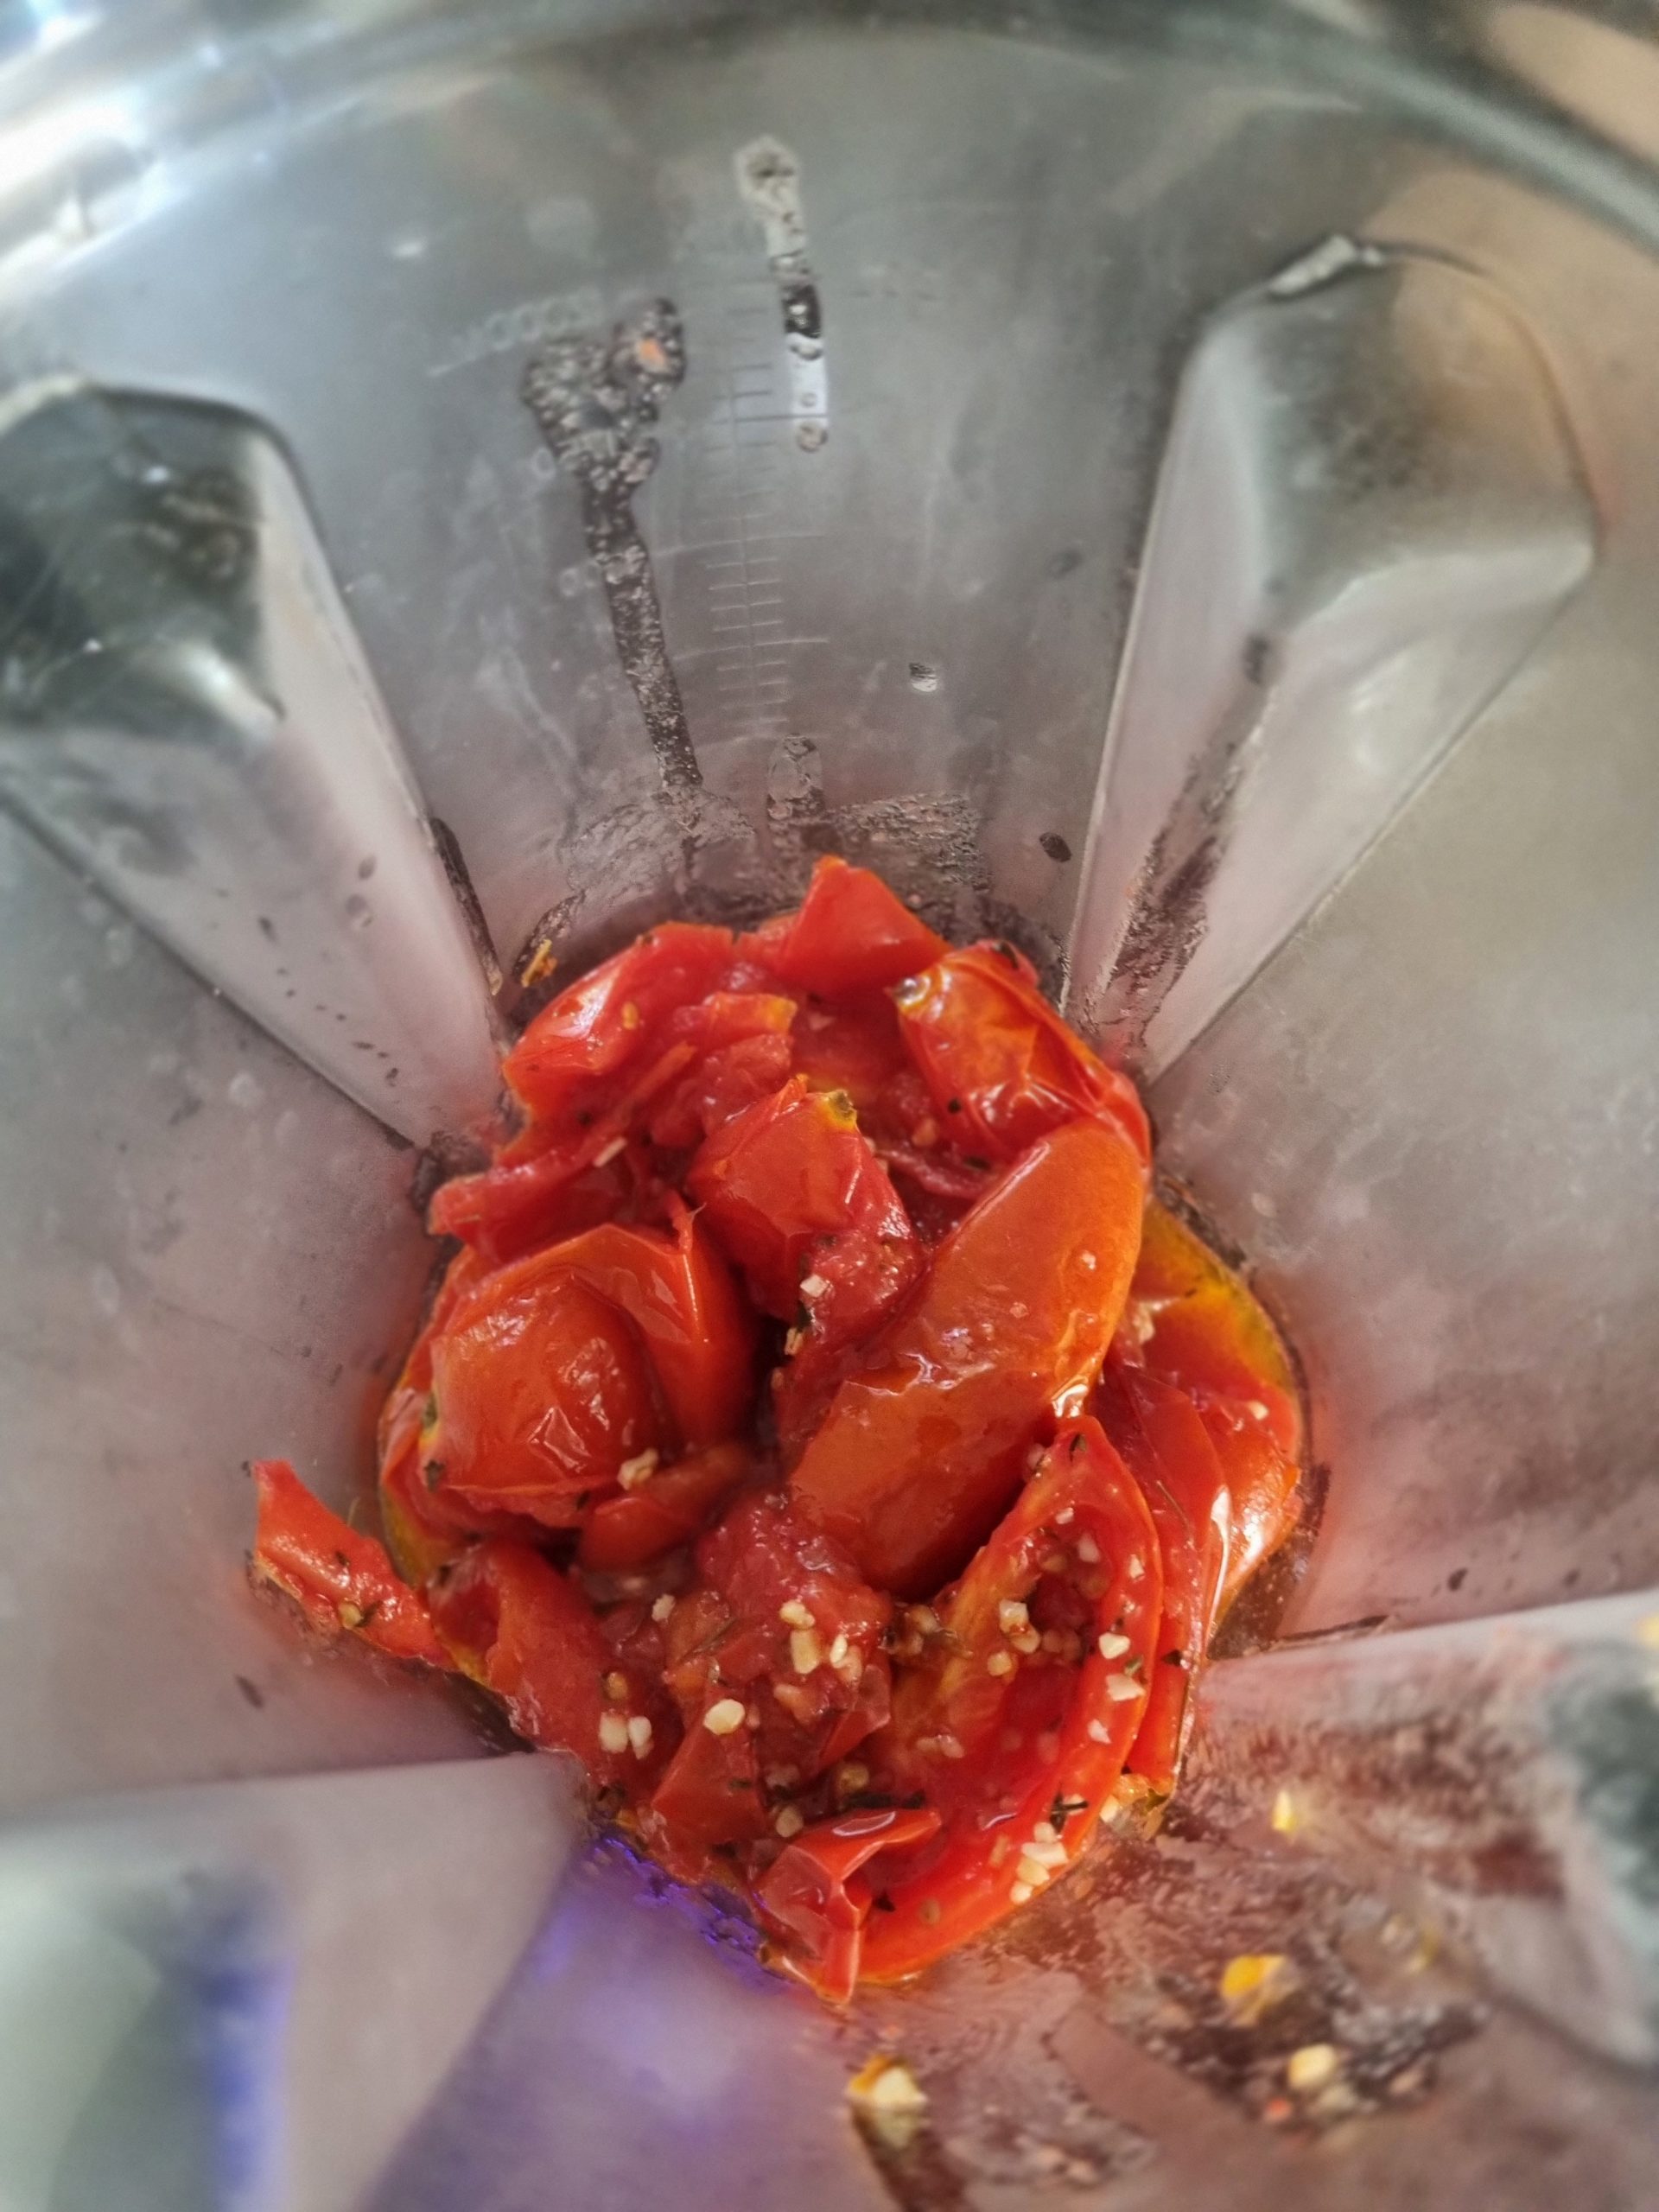 Comment faire la meilleure des sauces aux tomates maison "